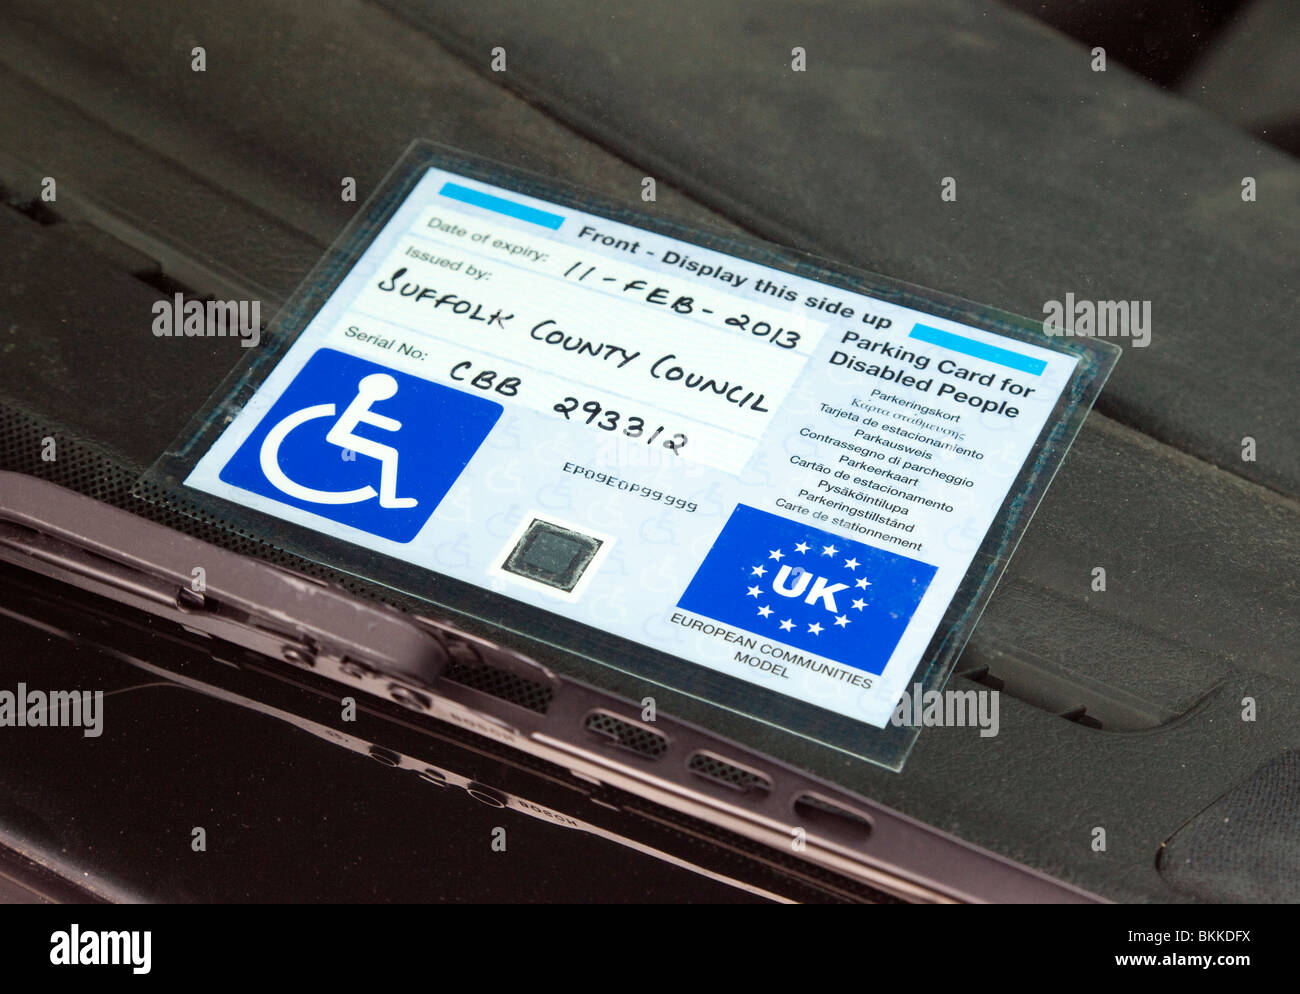 Personnes handicapées carte de stationnement utilisé au Royaume-Uni Banque D'Images